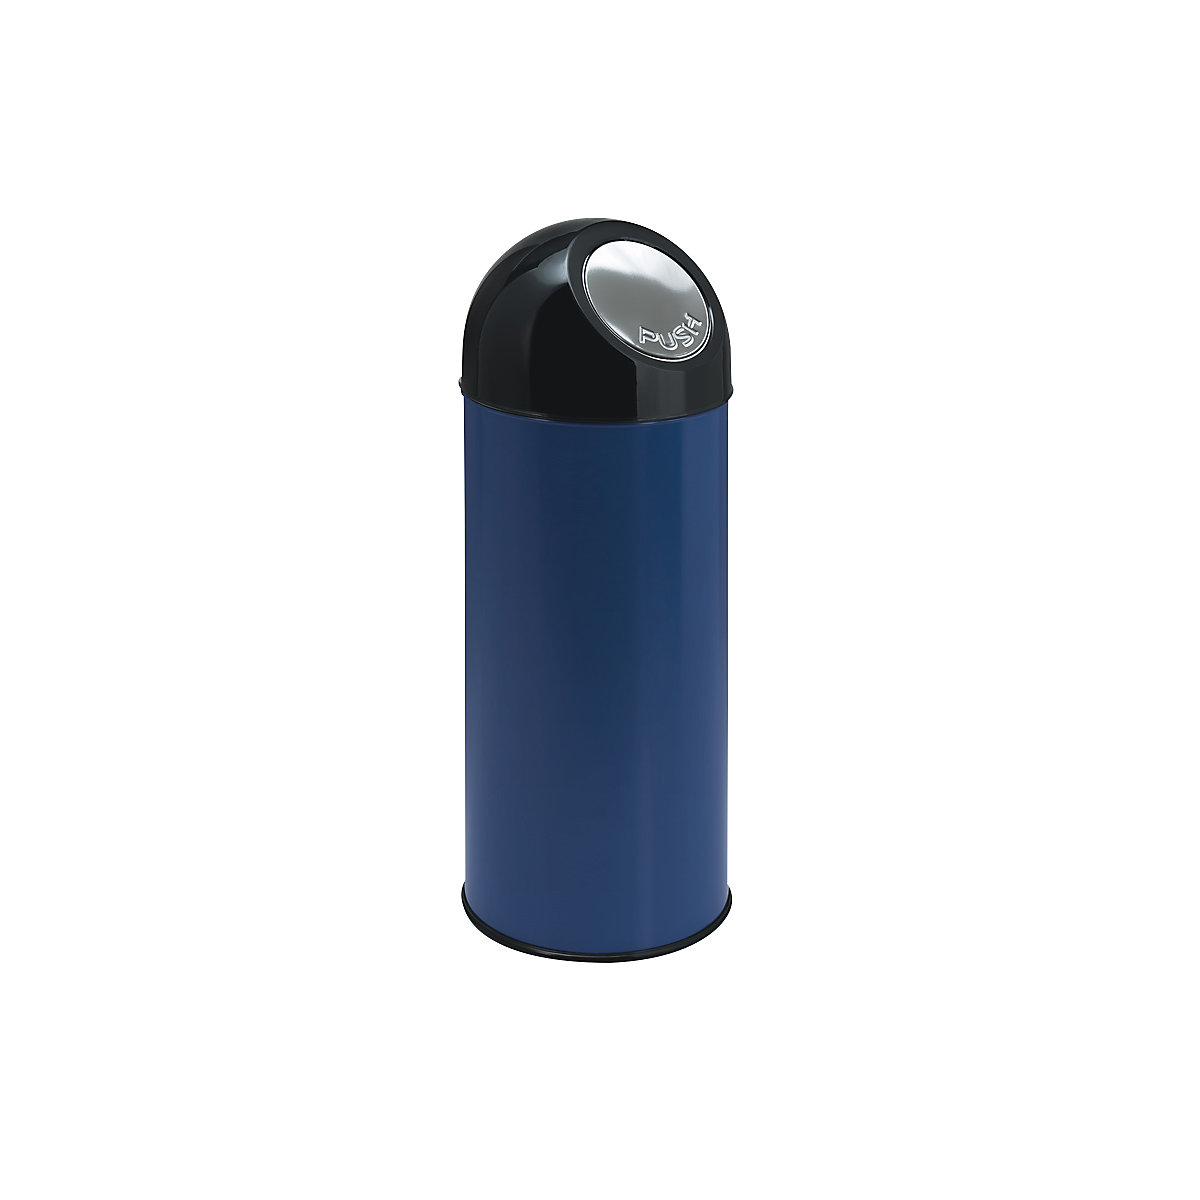 Pojemnik na odpady typu Push, poj. 55 l, pojemnik wewnętrzny ocynkowany, niebieski, od 2 szt.-10